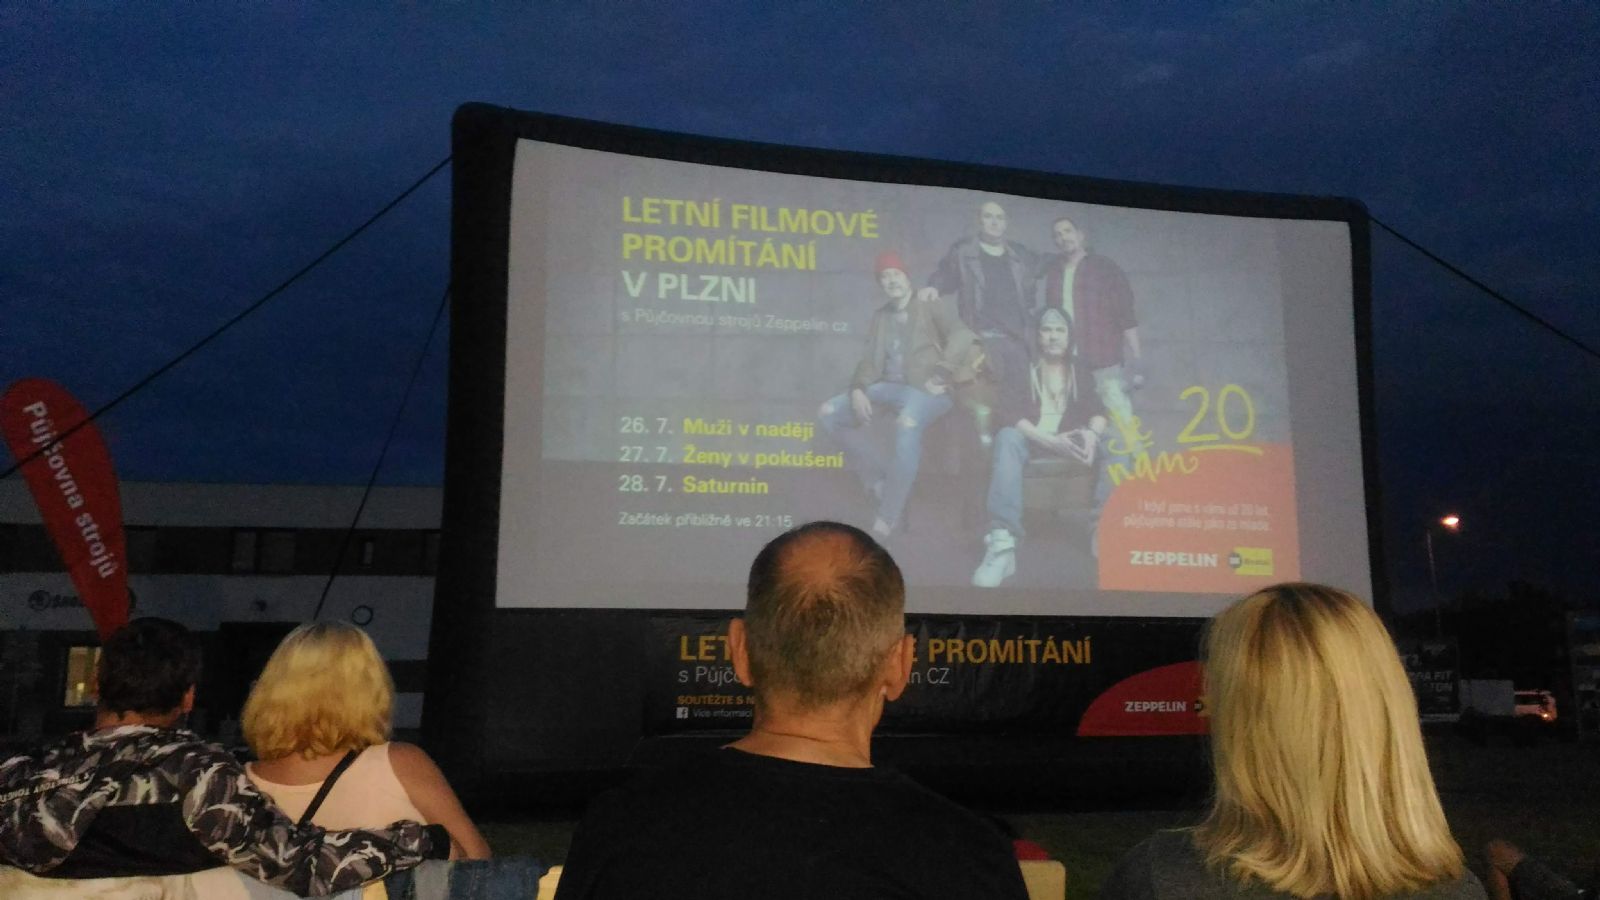 Paměť národa zve v Plzni do letního kina